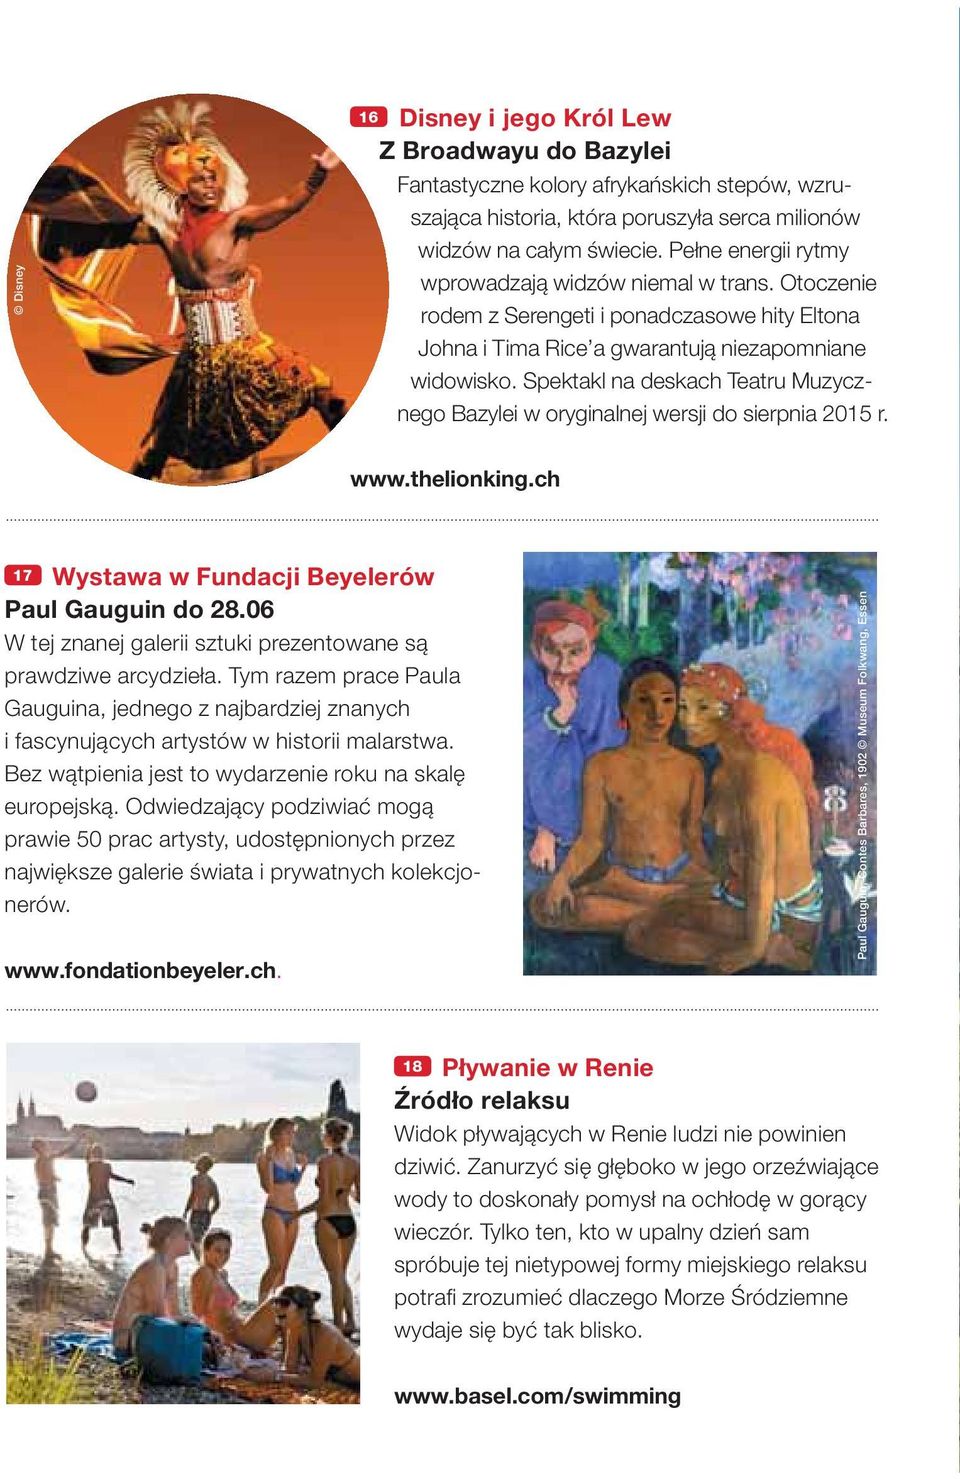 Spektakl na deskach Teatru Muzycznego Bazylei w oryginalnej wersji do sierpnia 2015 r. www.thelionking.ch 17 Wystawa w Fundacji Beyelerów Paul Gauguin do 28.